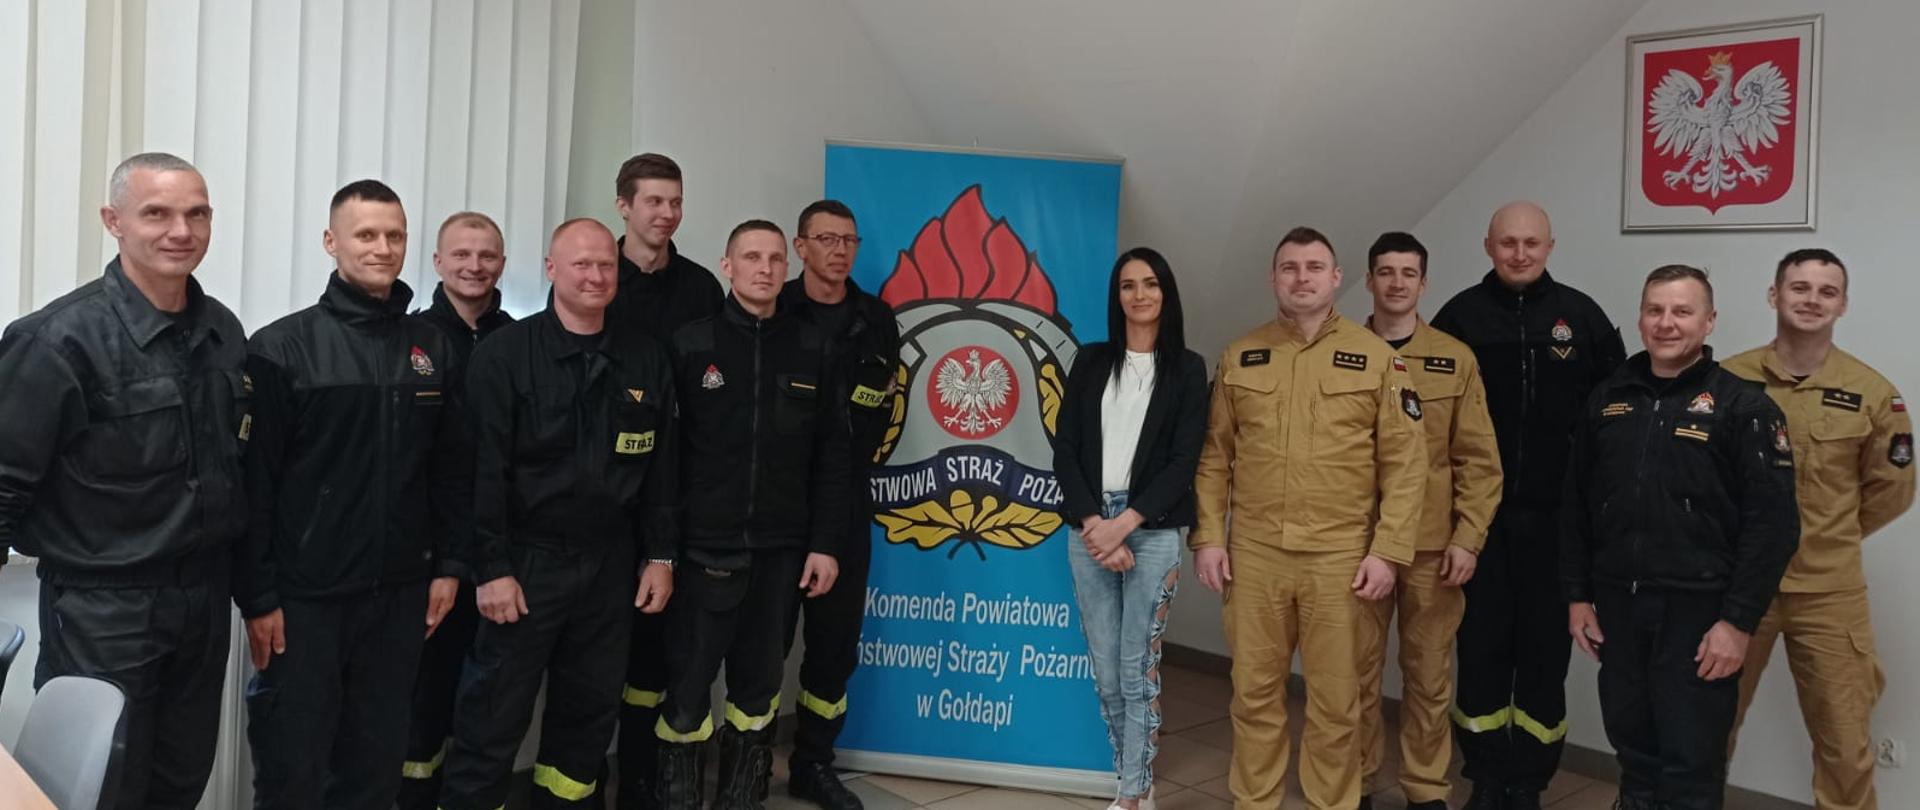 Zdjęcie przedstawia Panią Monikę Szynkowską reprezentującą firmę Cogito Med wraz z funkcjonariuszami Komendy Powiatowej Państwowej Straży Pożarnej w Gołdapi podczas spotkania szkoleniowego w ramach profilaktyki zakaźnych chorób odkleszczowych